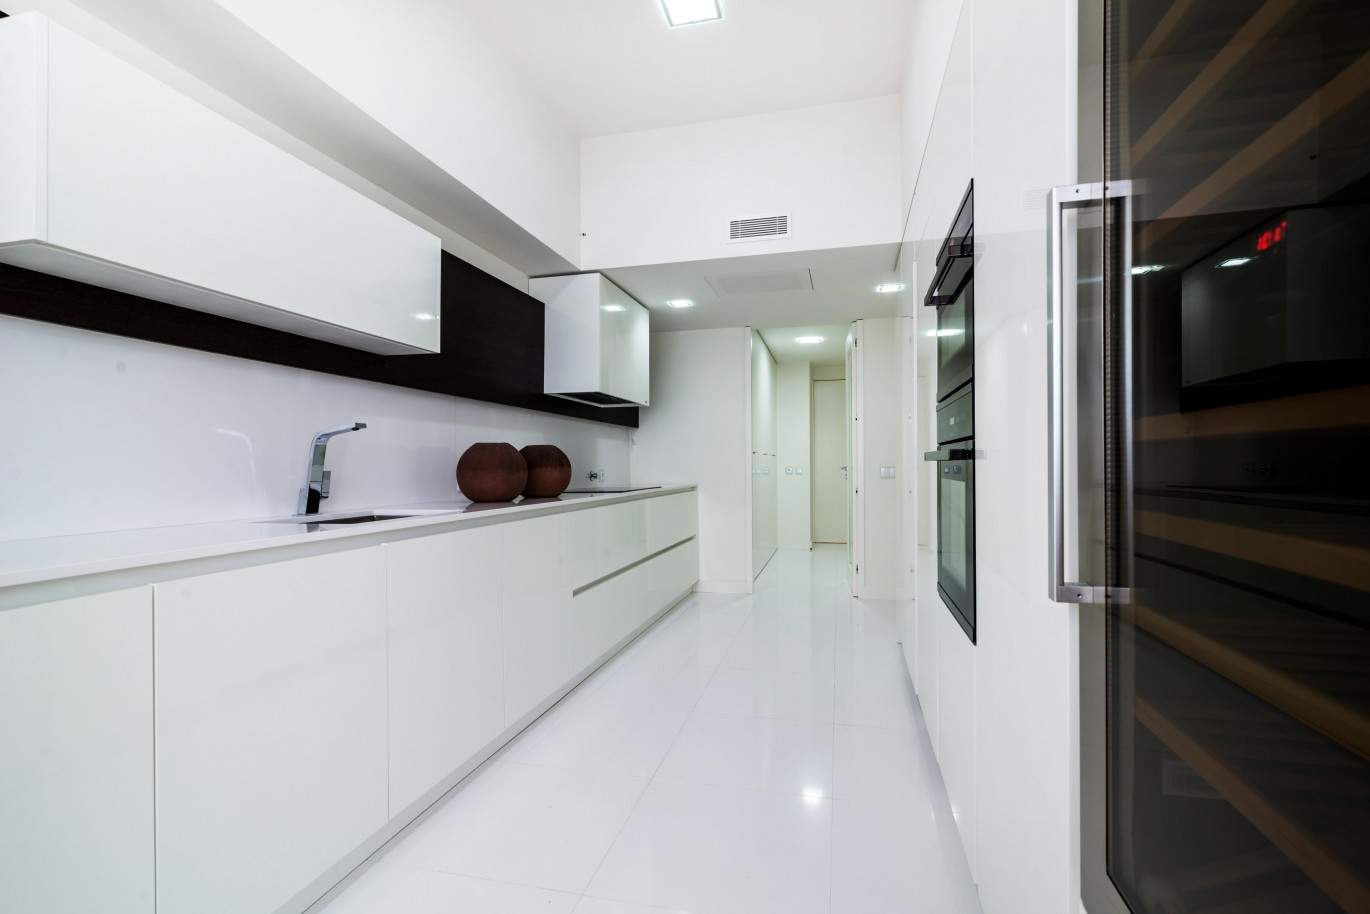 Duplex apartment, Luxus, in der Nähe des Meeres, Leça da Palmeira, Portugal_38305